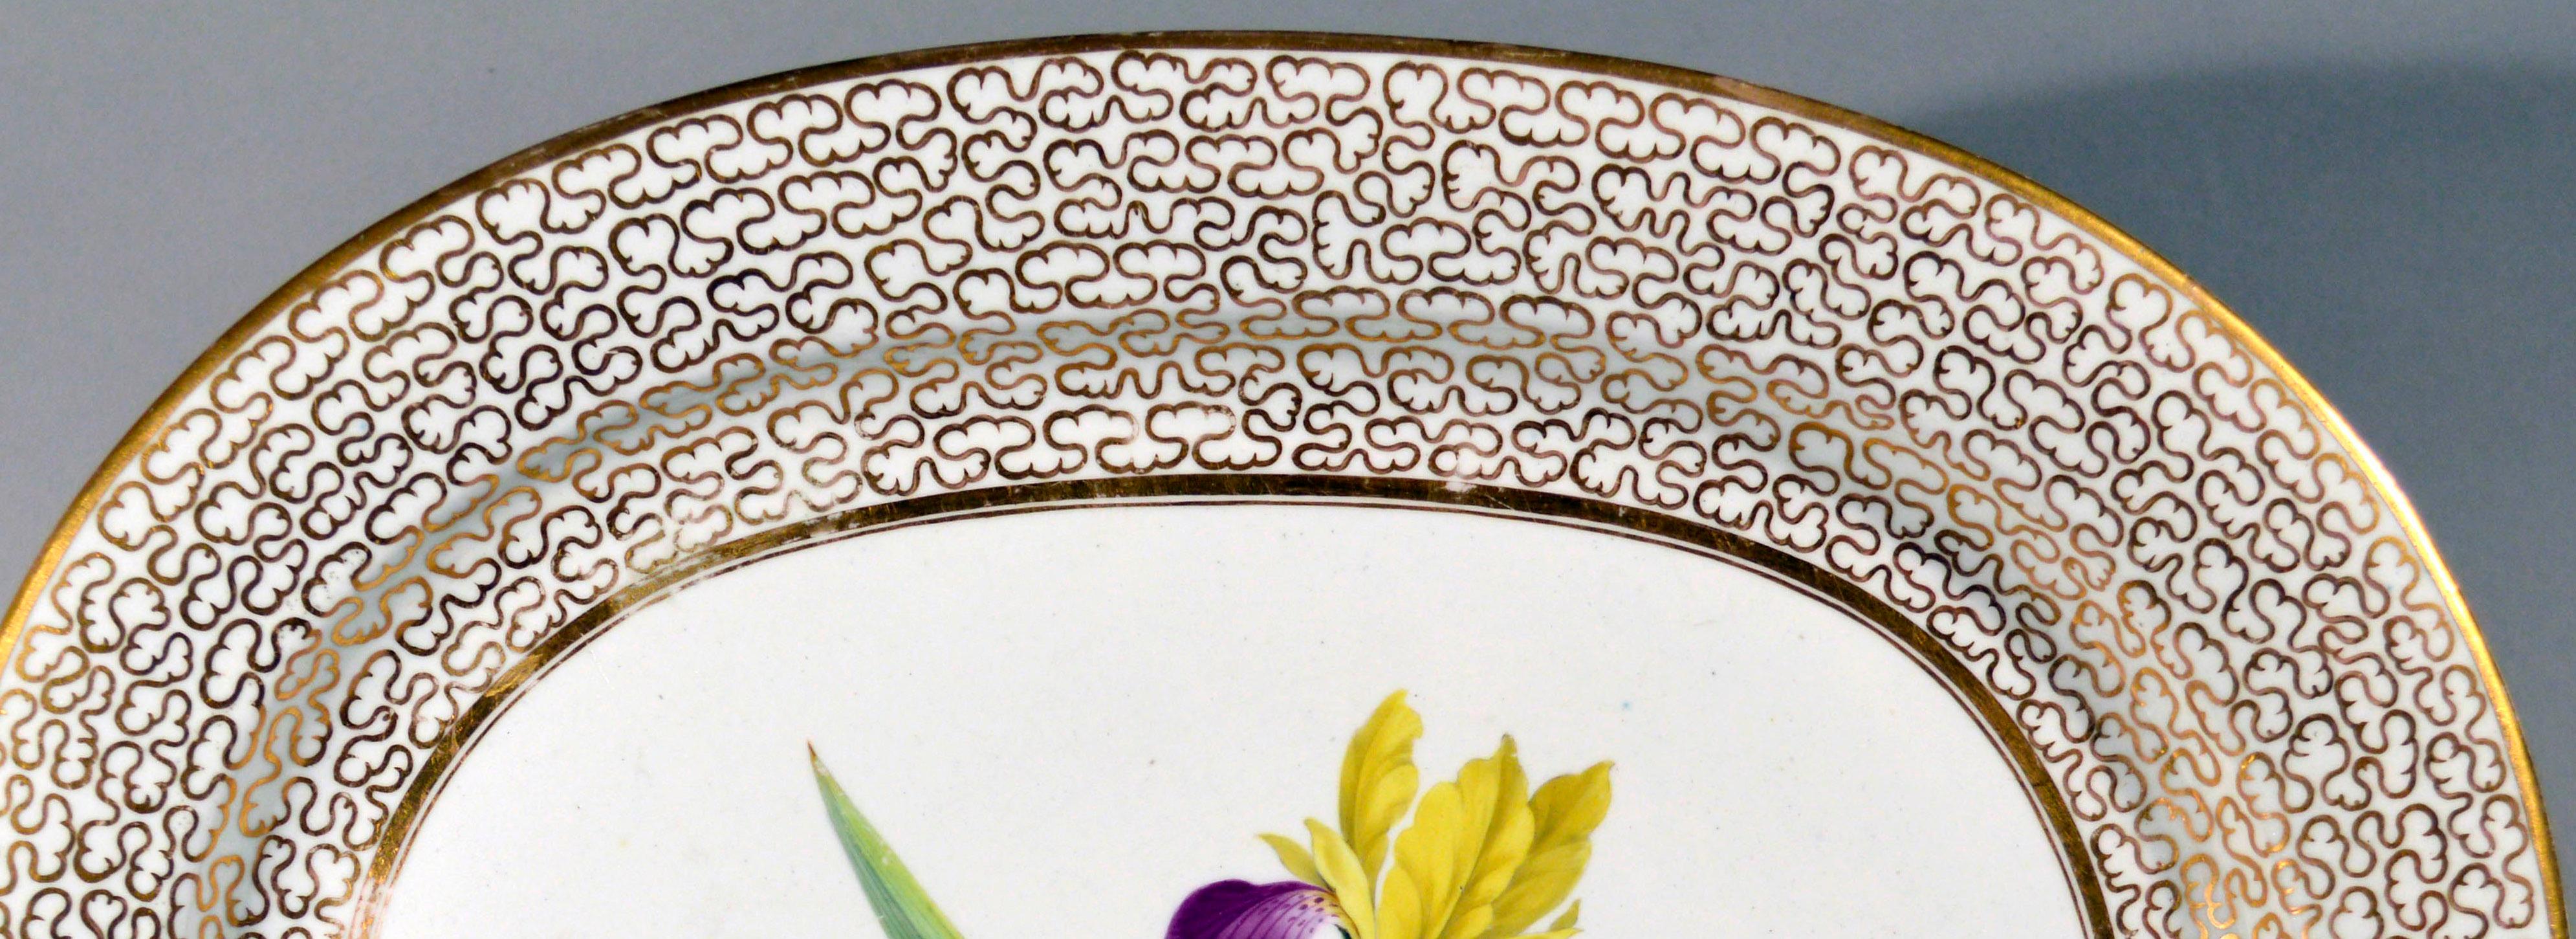 Regency Chamberlain Worcester Porcelain Large Botanical Dish For Sale 1